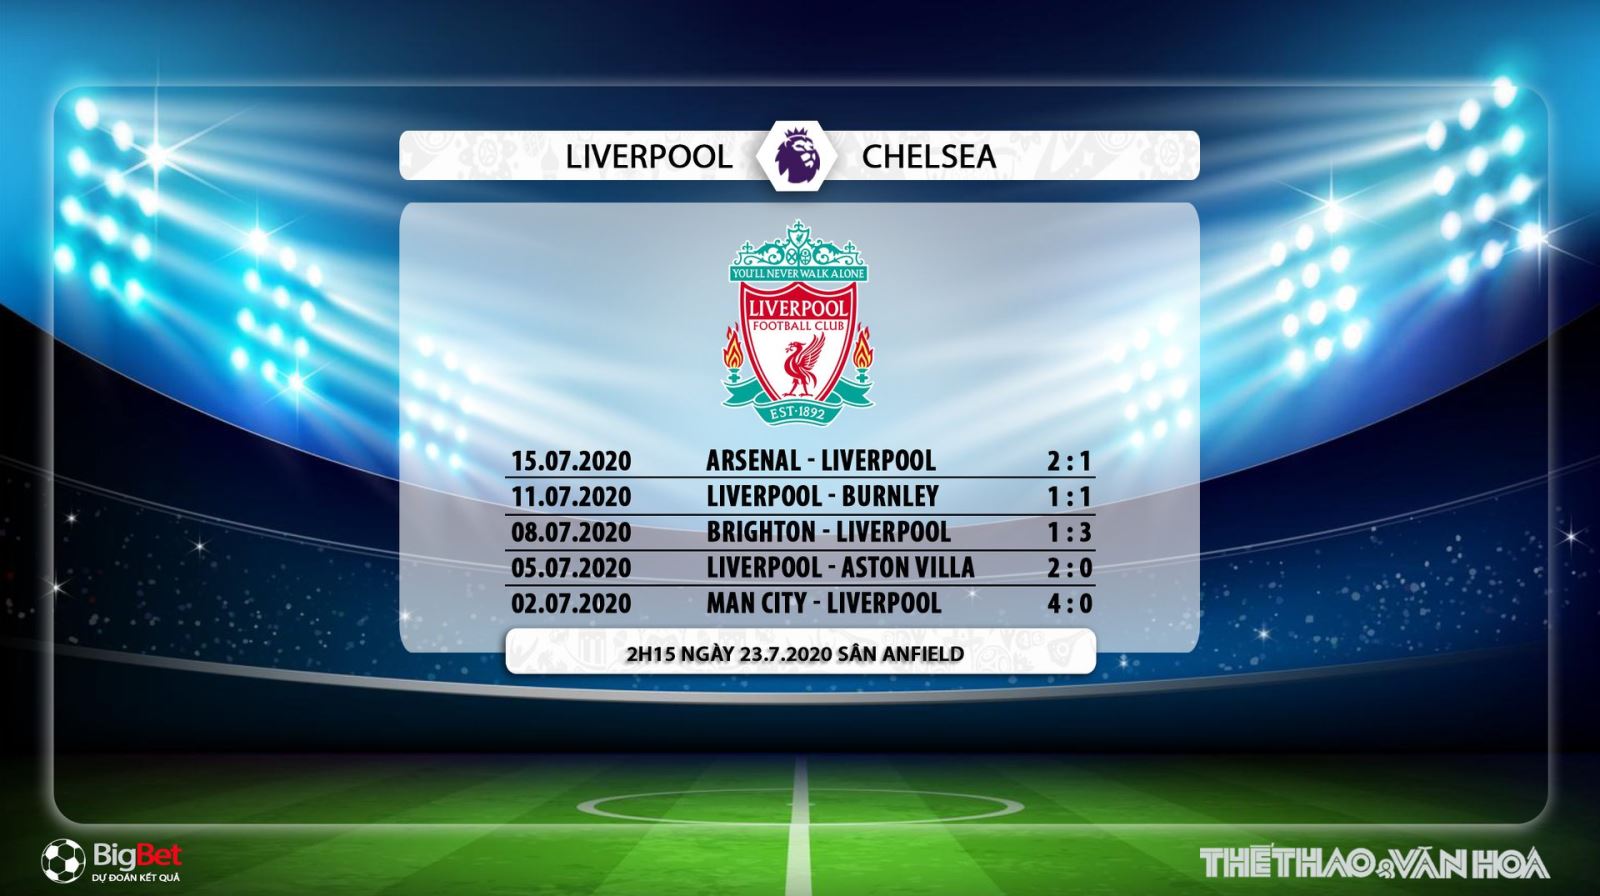 Liverpool vs Chelsea, nhận định bóng đá Liverpool vs Chelsea, kèo Liverpool vs Chelsea, liverpool, chelsea, trực tiếp Liverpool vs Chelsea, kèo bóng đá, nhận định bóng đá bóng đá